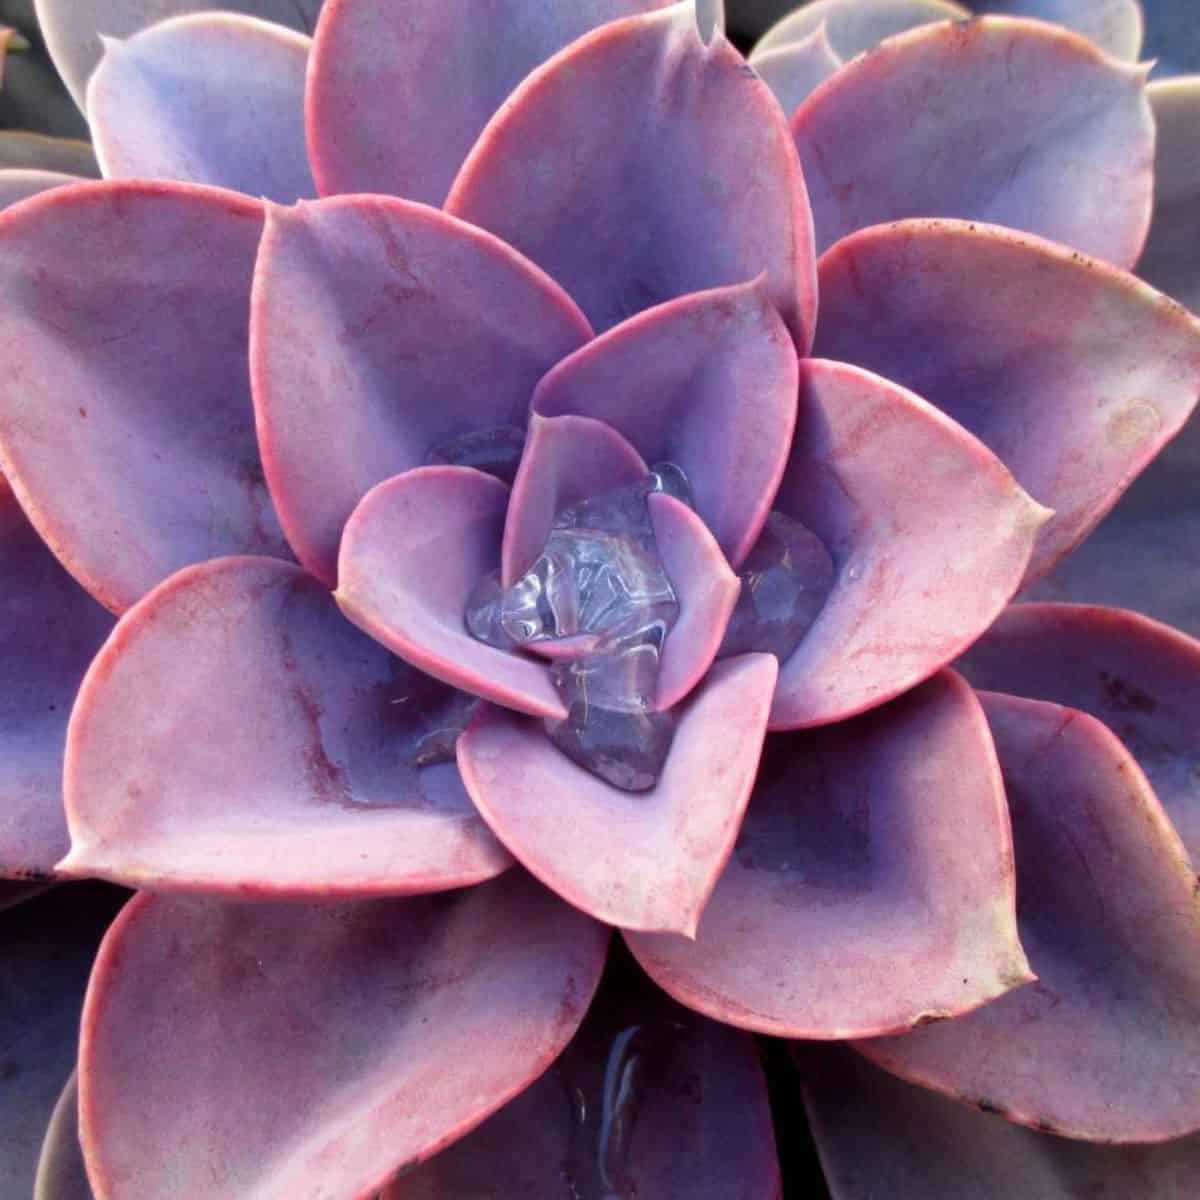 Beautiful purple succulent close-up.